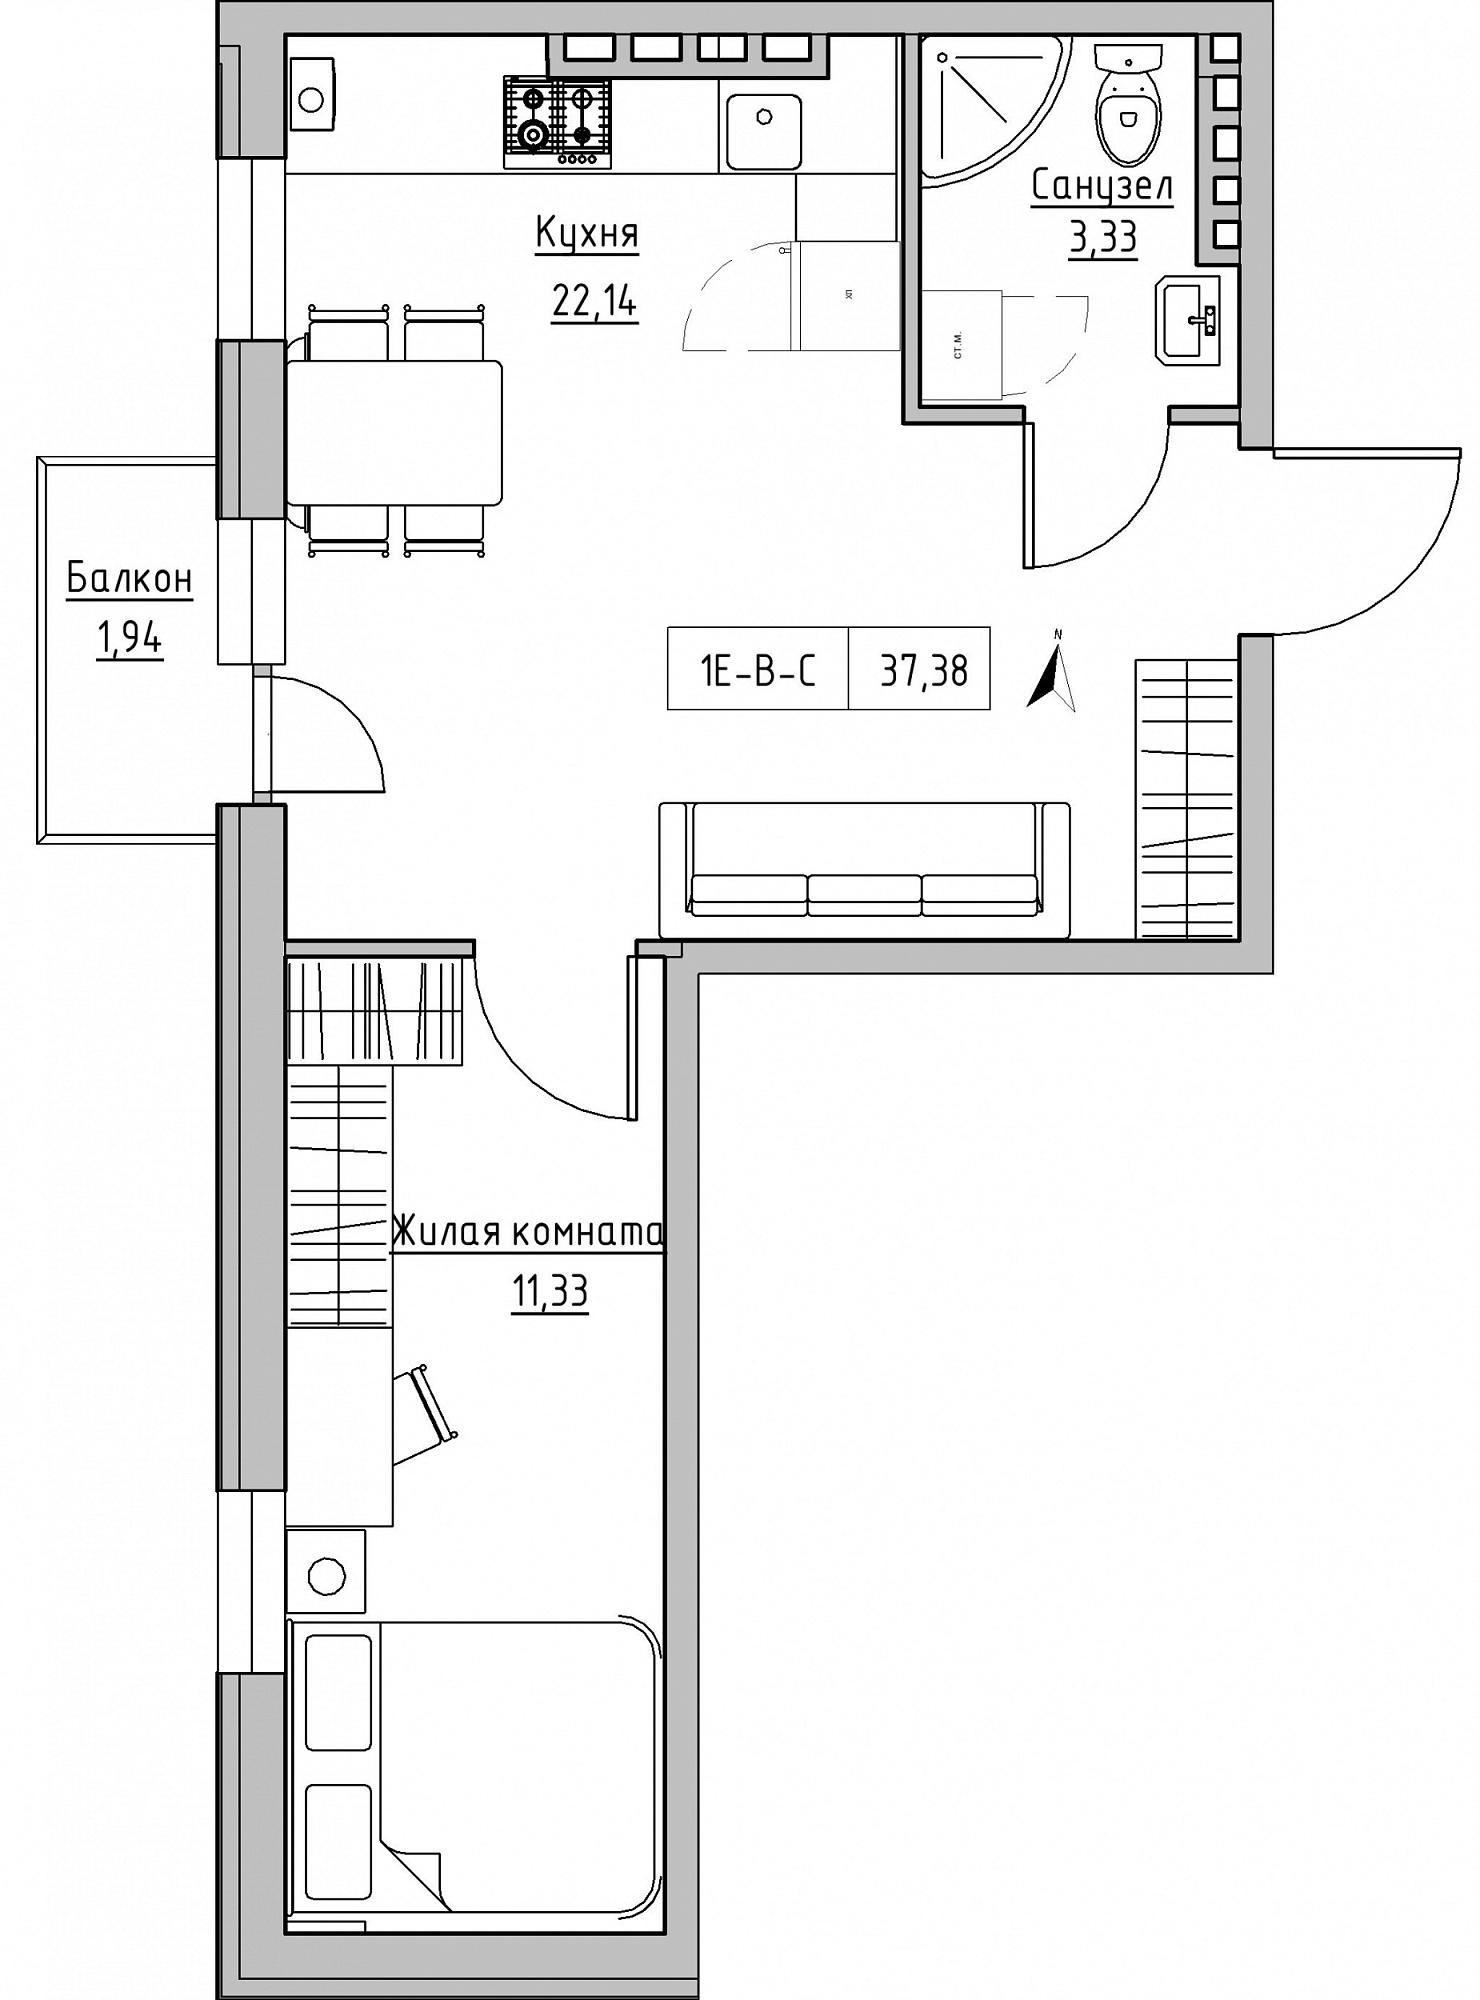 Планировка 1-к квартира площей 37.38м2, KS-024-04/0010.